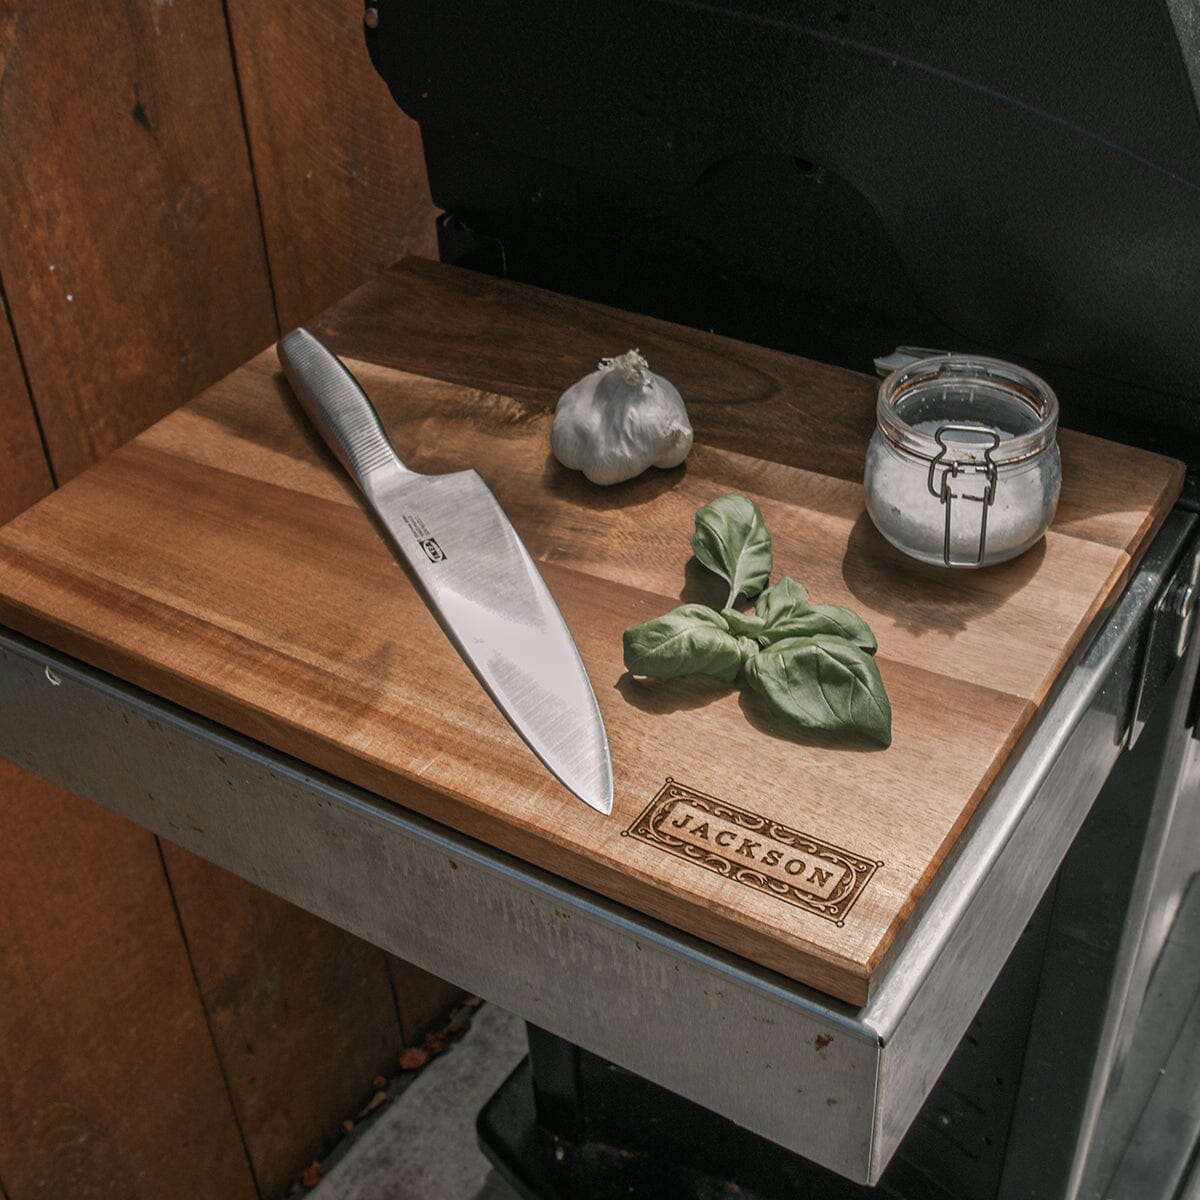 Chopping Blocks, Chopping Board, Kitchen Knives, Cutting Board